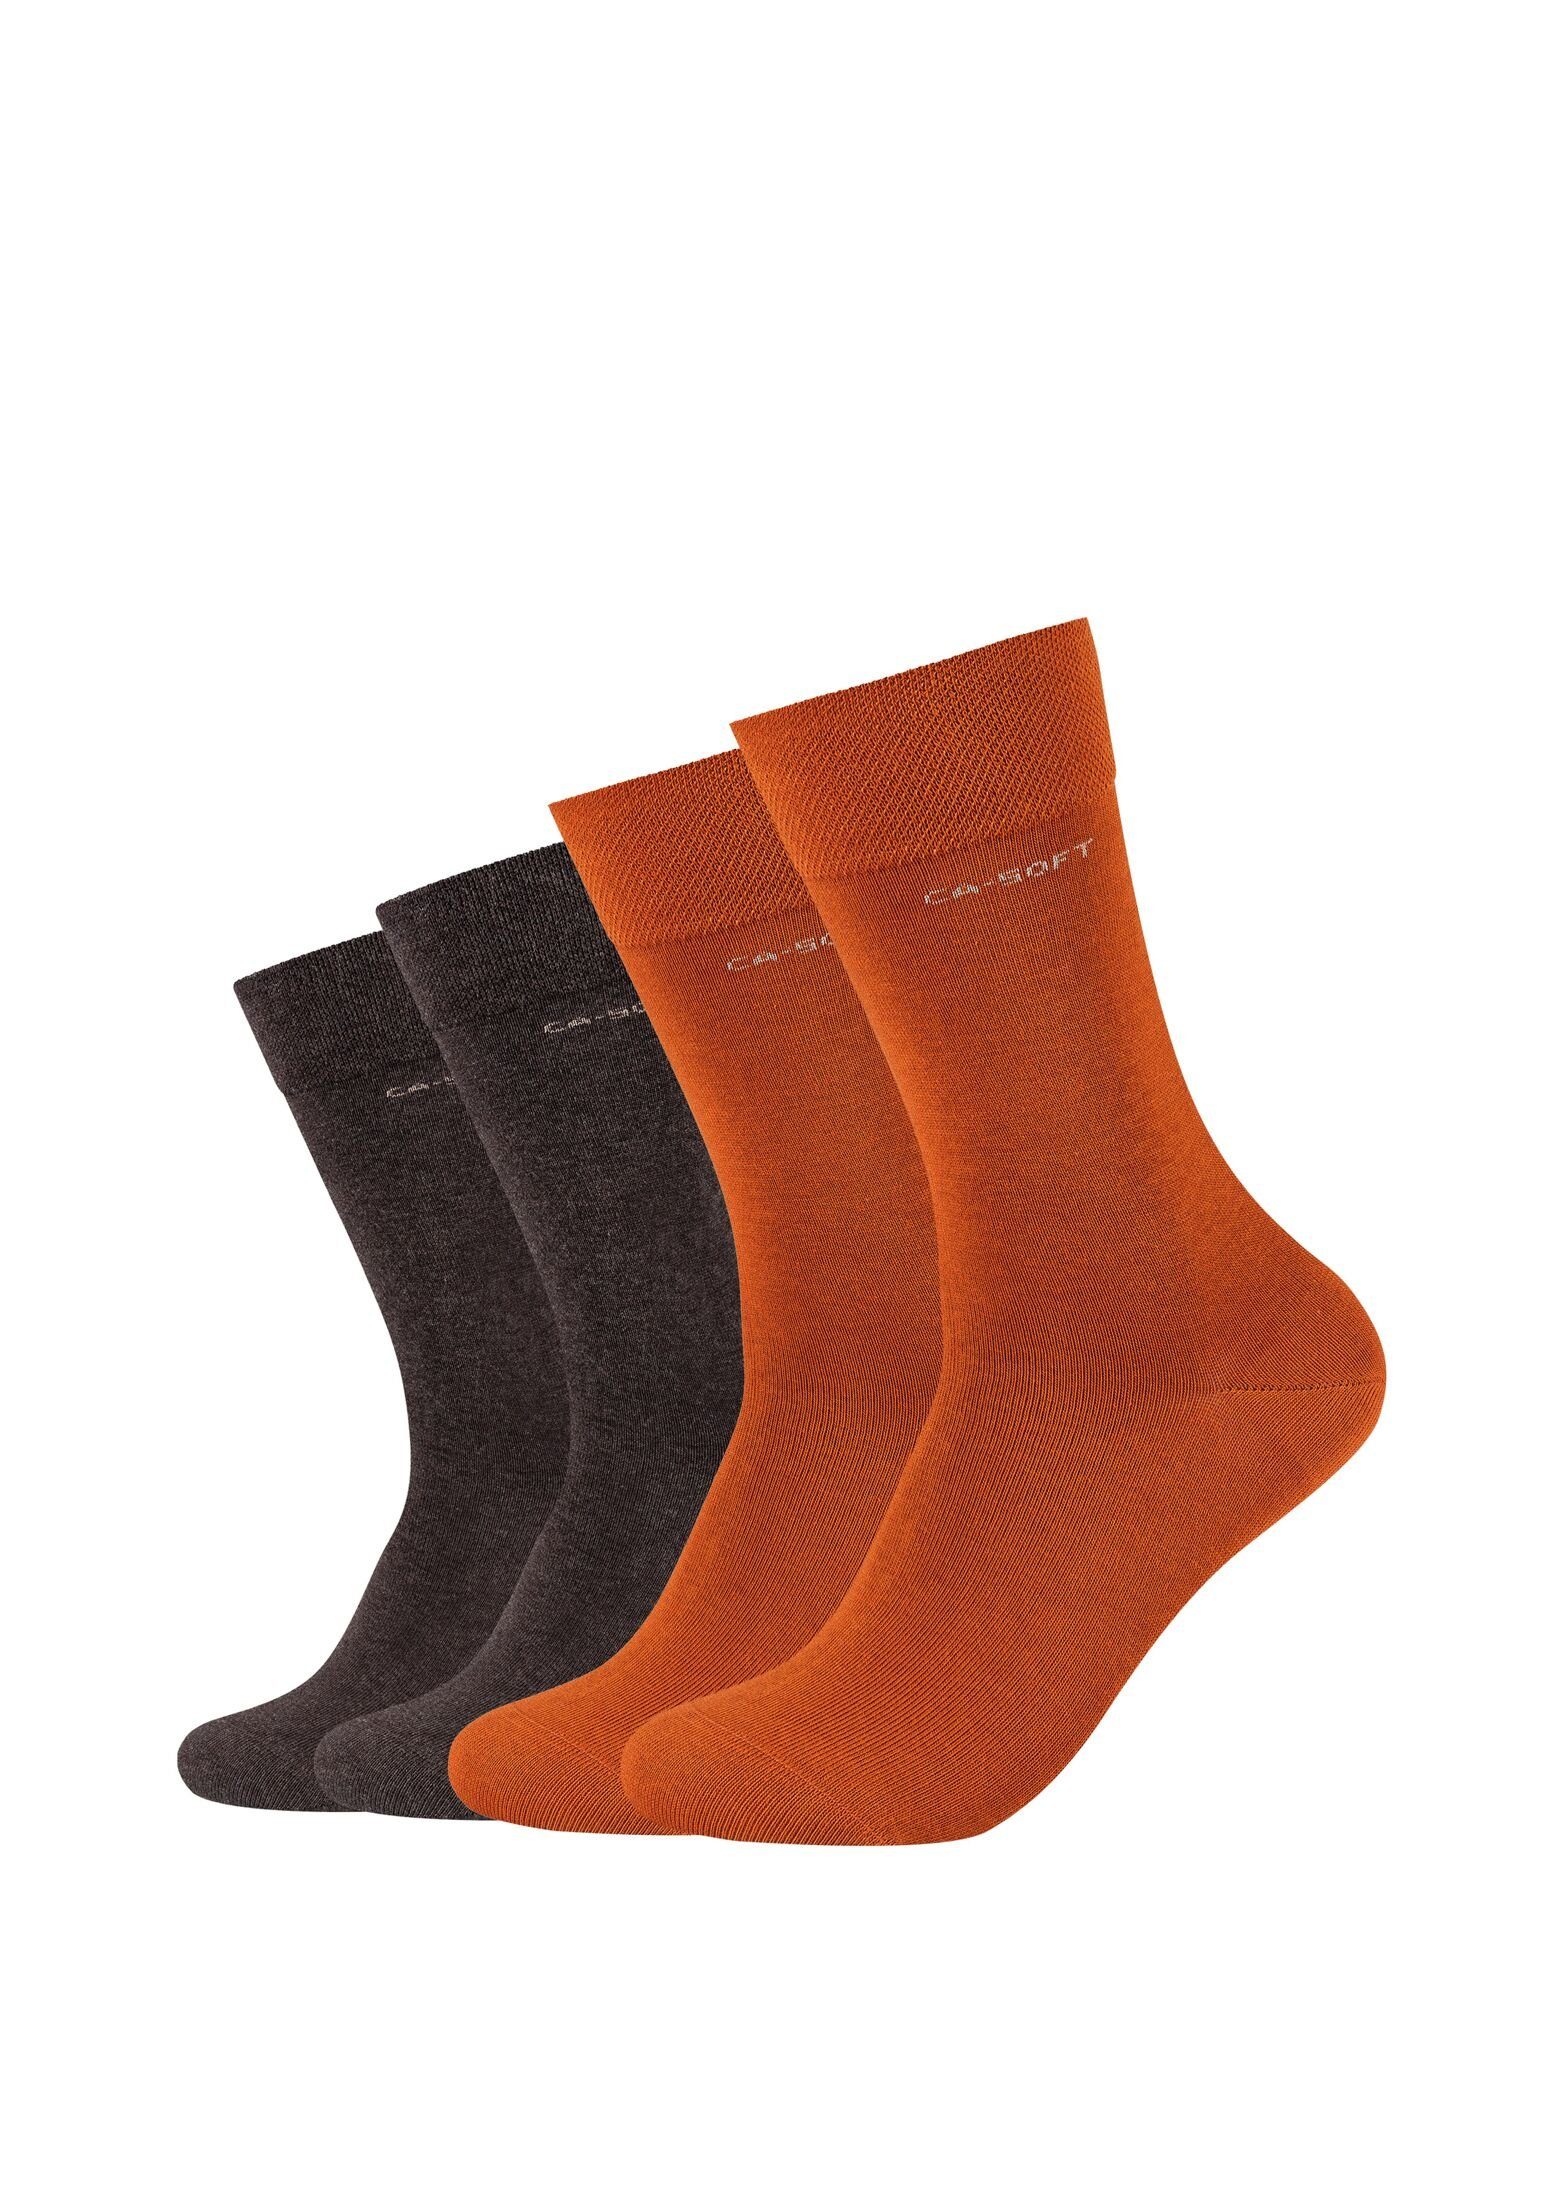 Camano Socken Socken für Damen und Herren Businesssocken Komfortbund Bequem rust